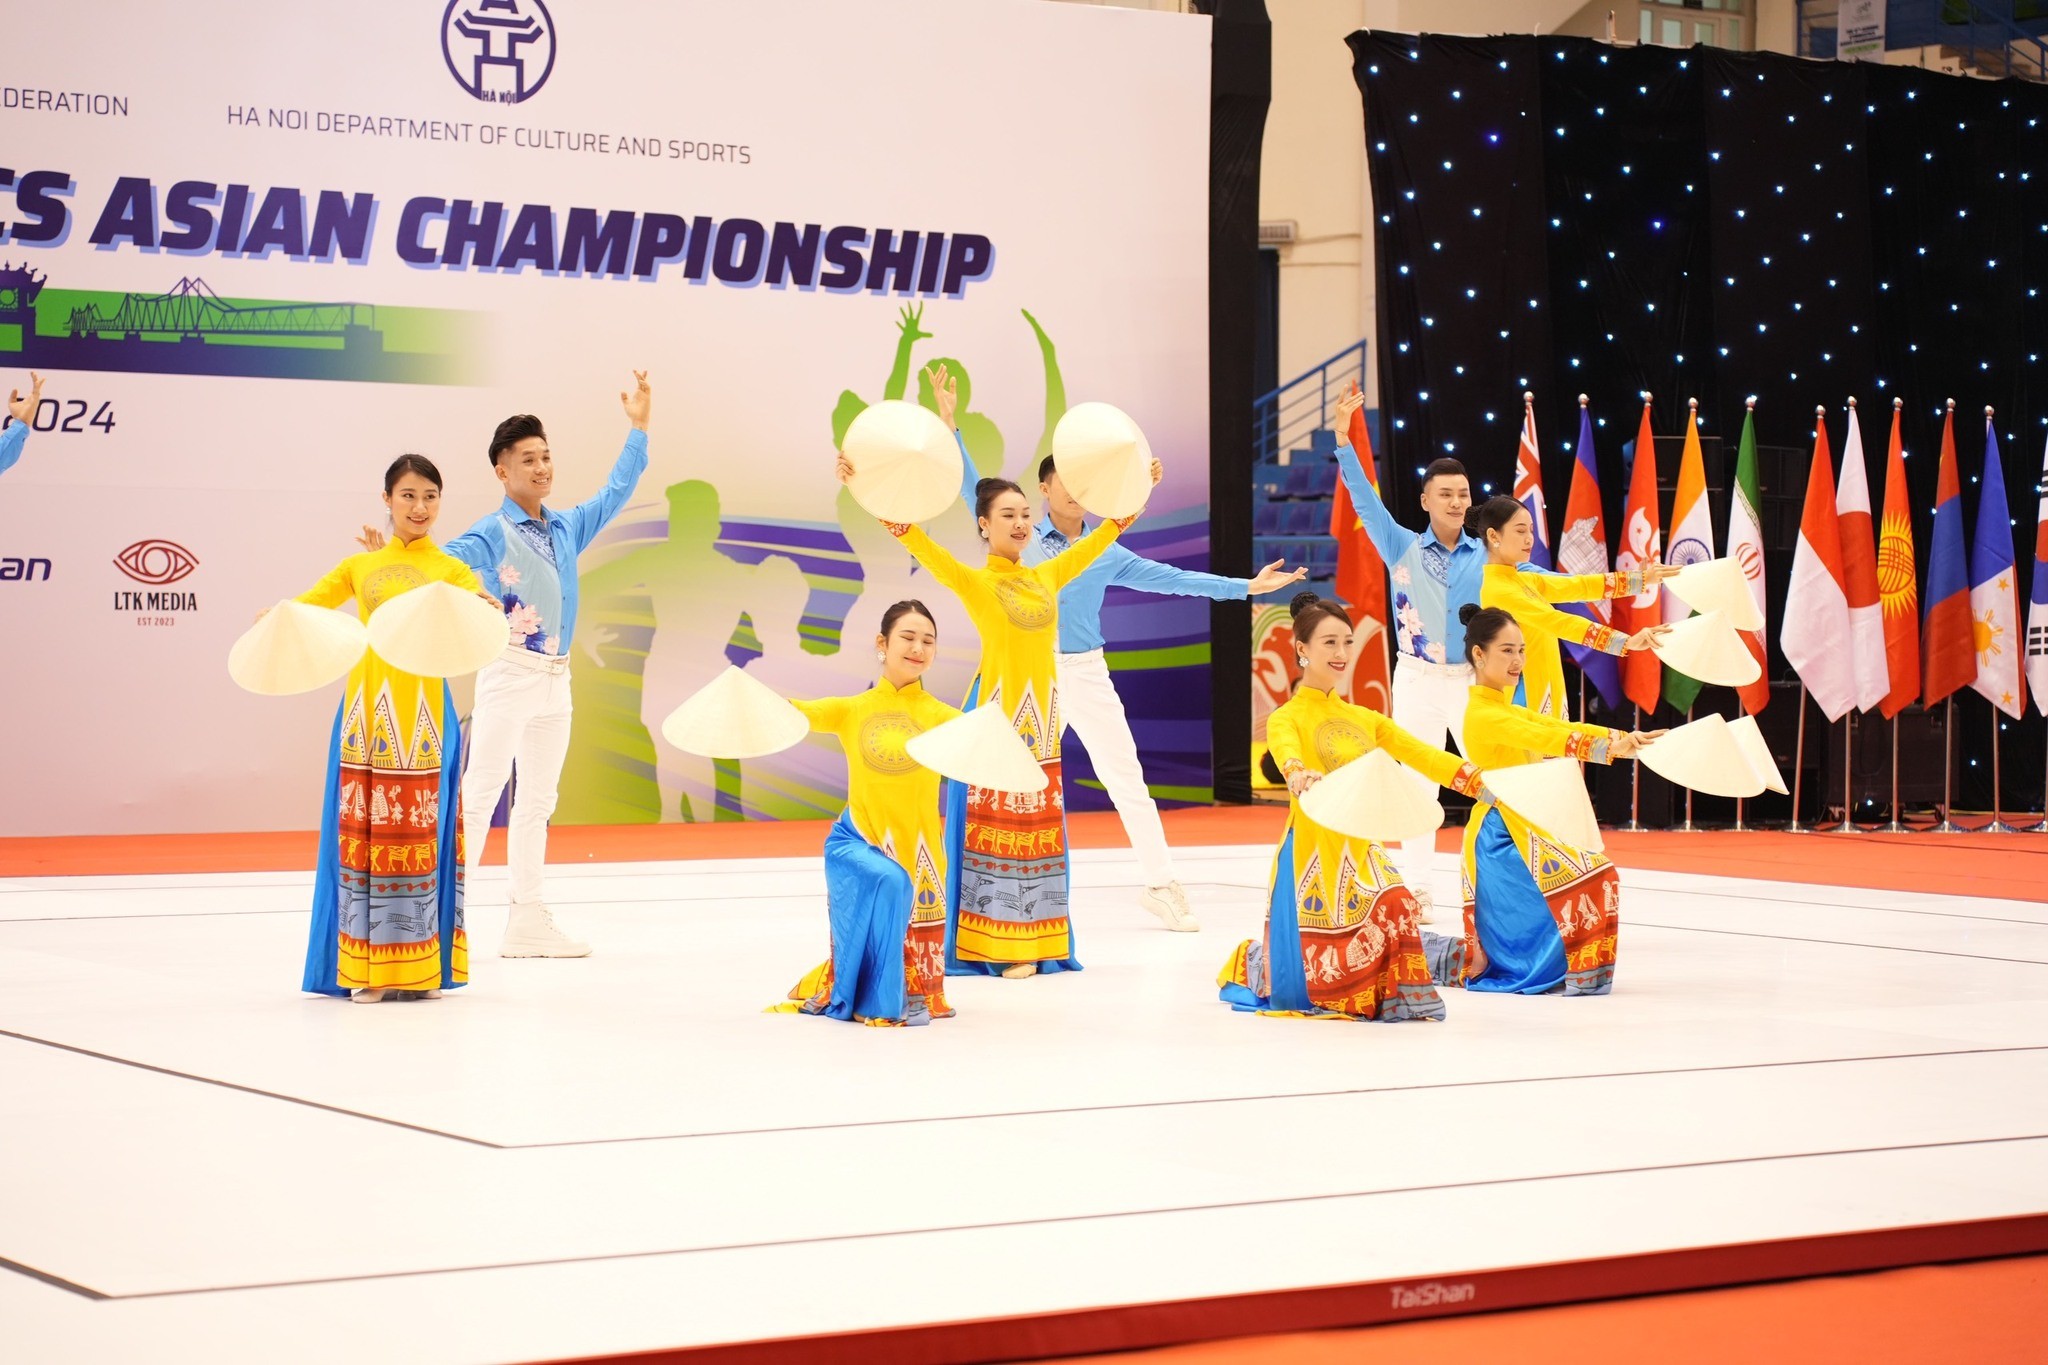 Khai mạc Giải vô địch Thể dục Aerobic châu Á lần thứ 9